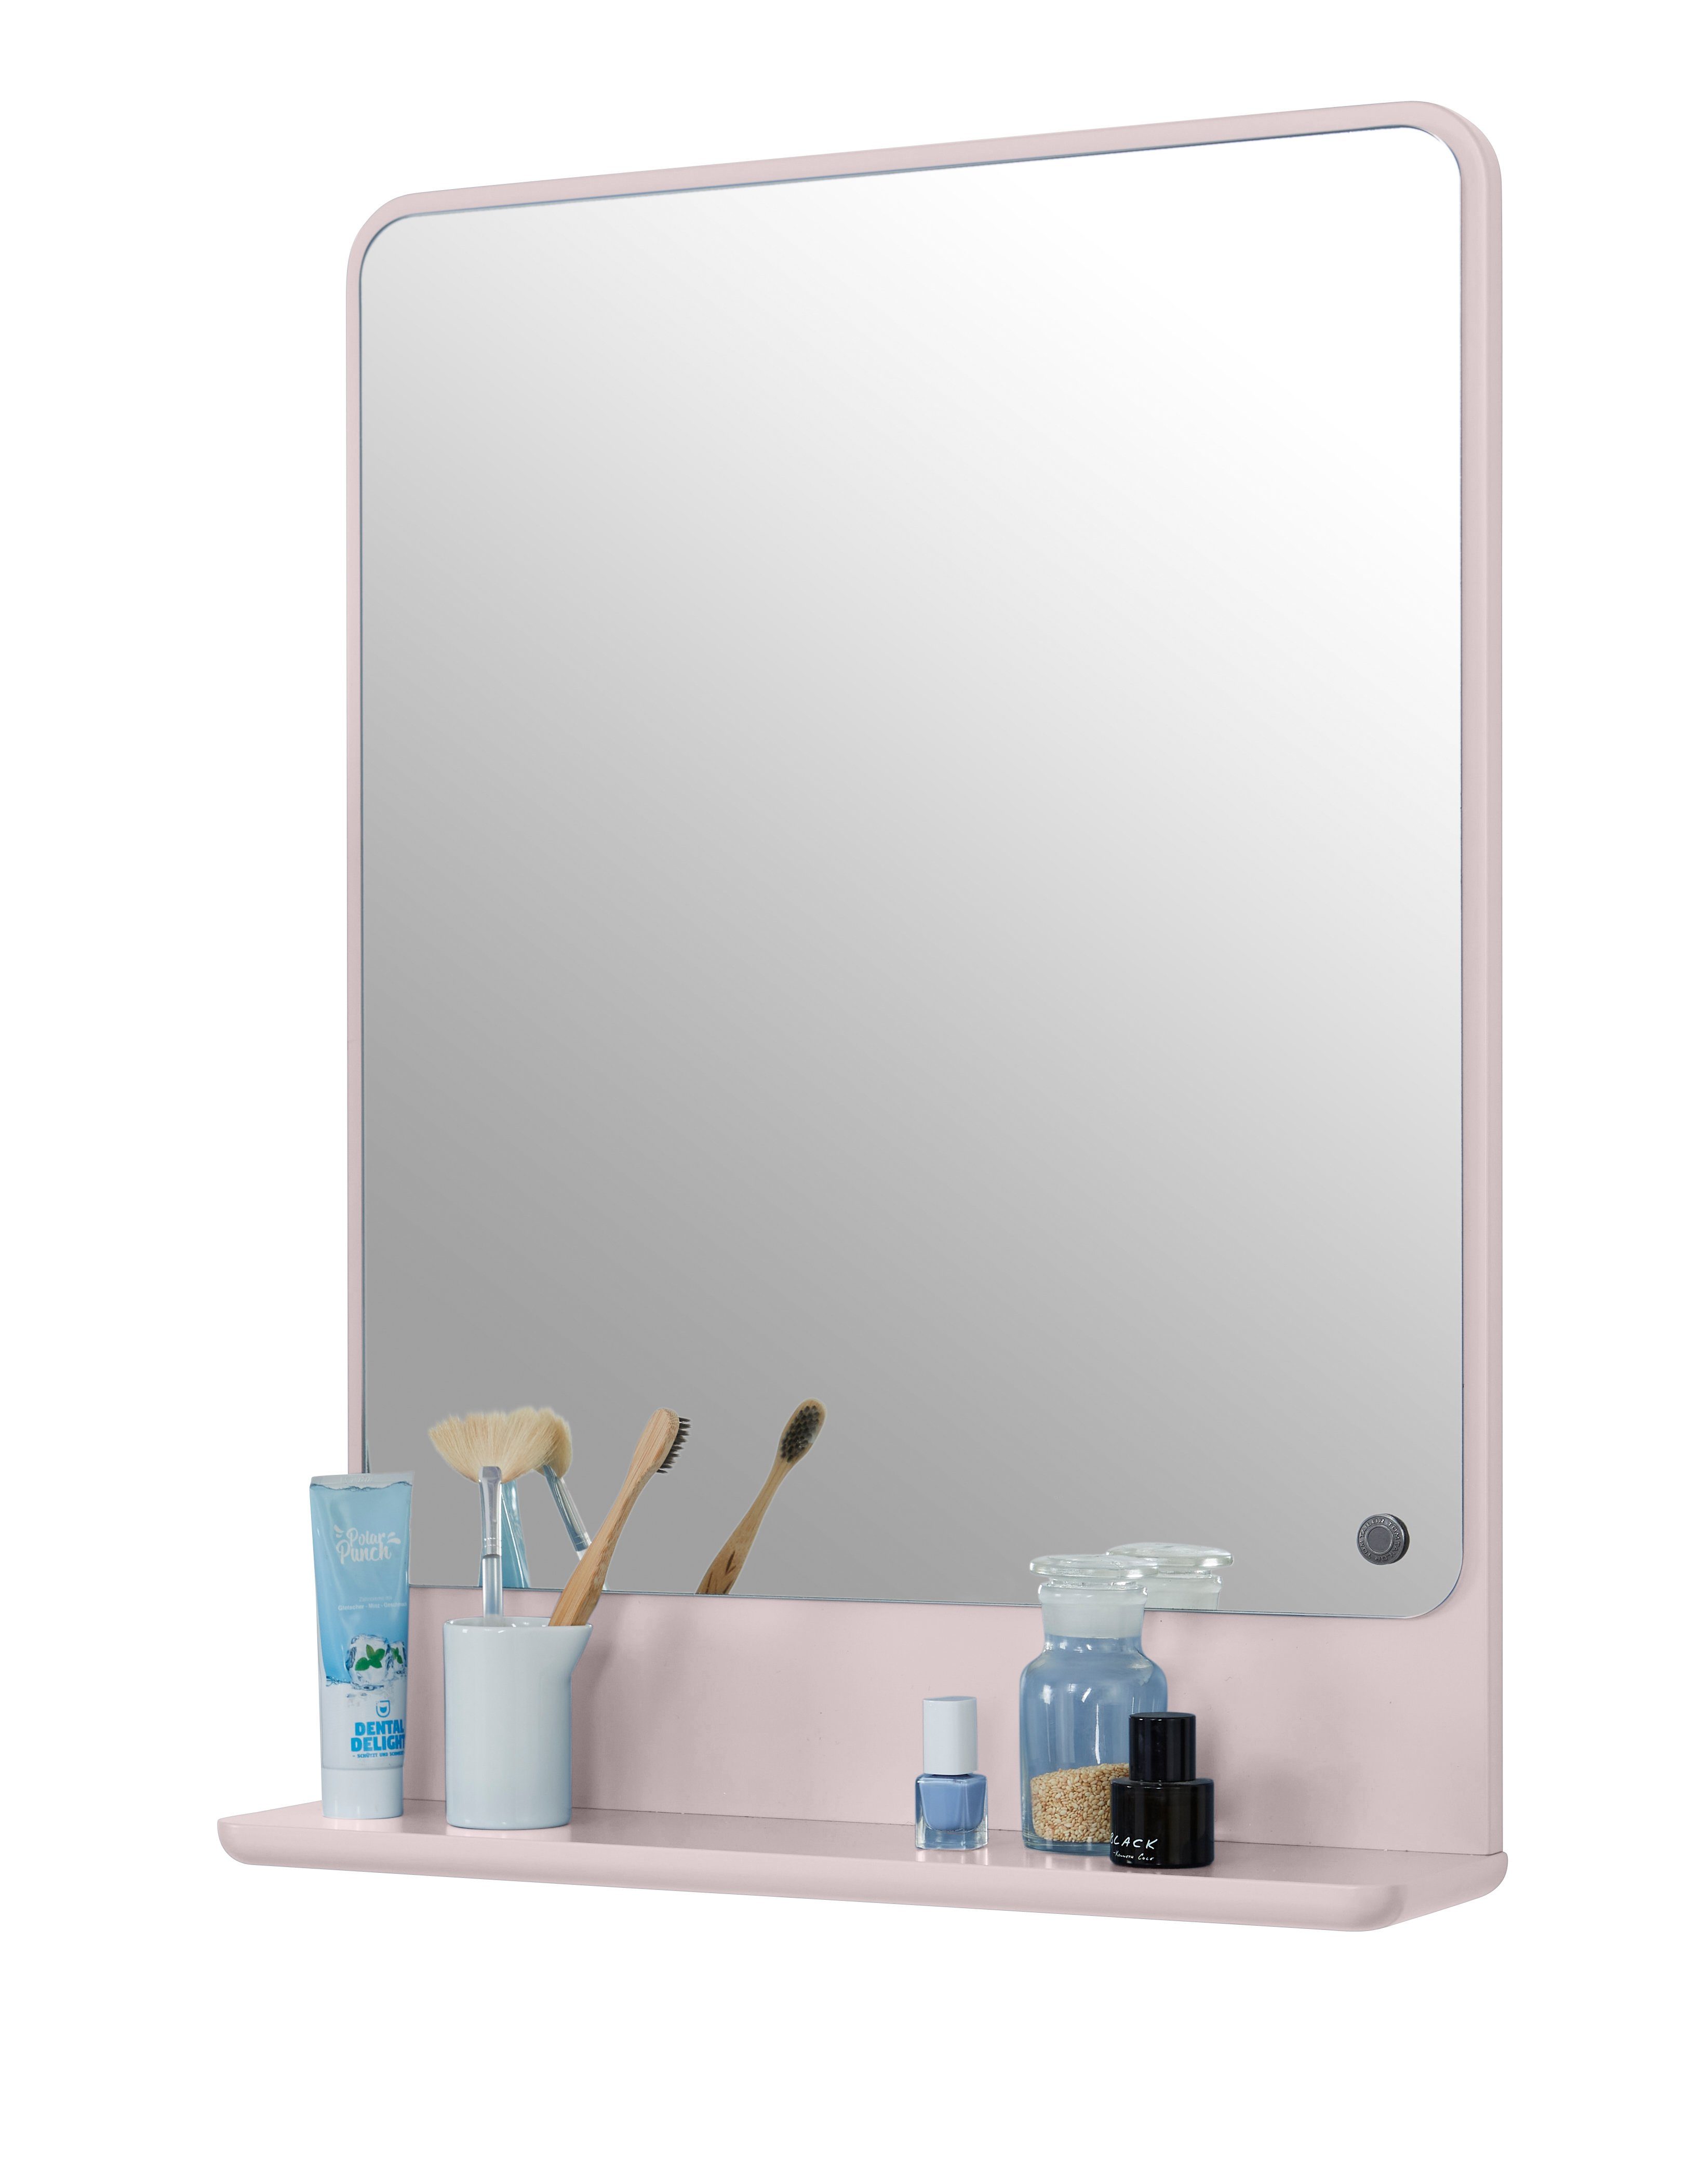 TOM TAILOR HOME Badspiegel COLOR BATH Spiegelelement - in vielen schönen Farben - 70 x 52 x 13 cm, hochwertig lackiertes MDF, gerundete Kanten